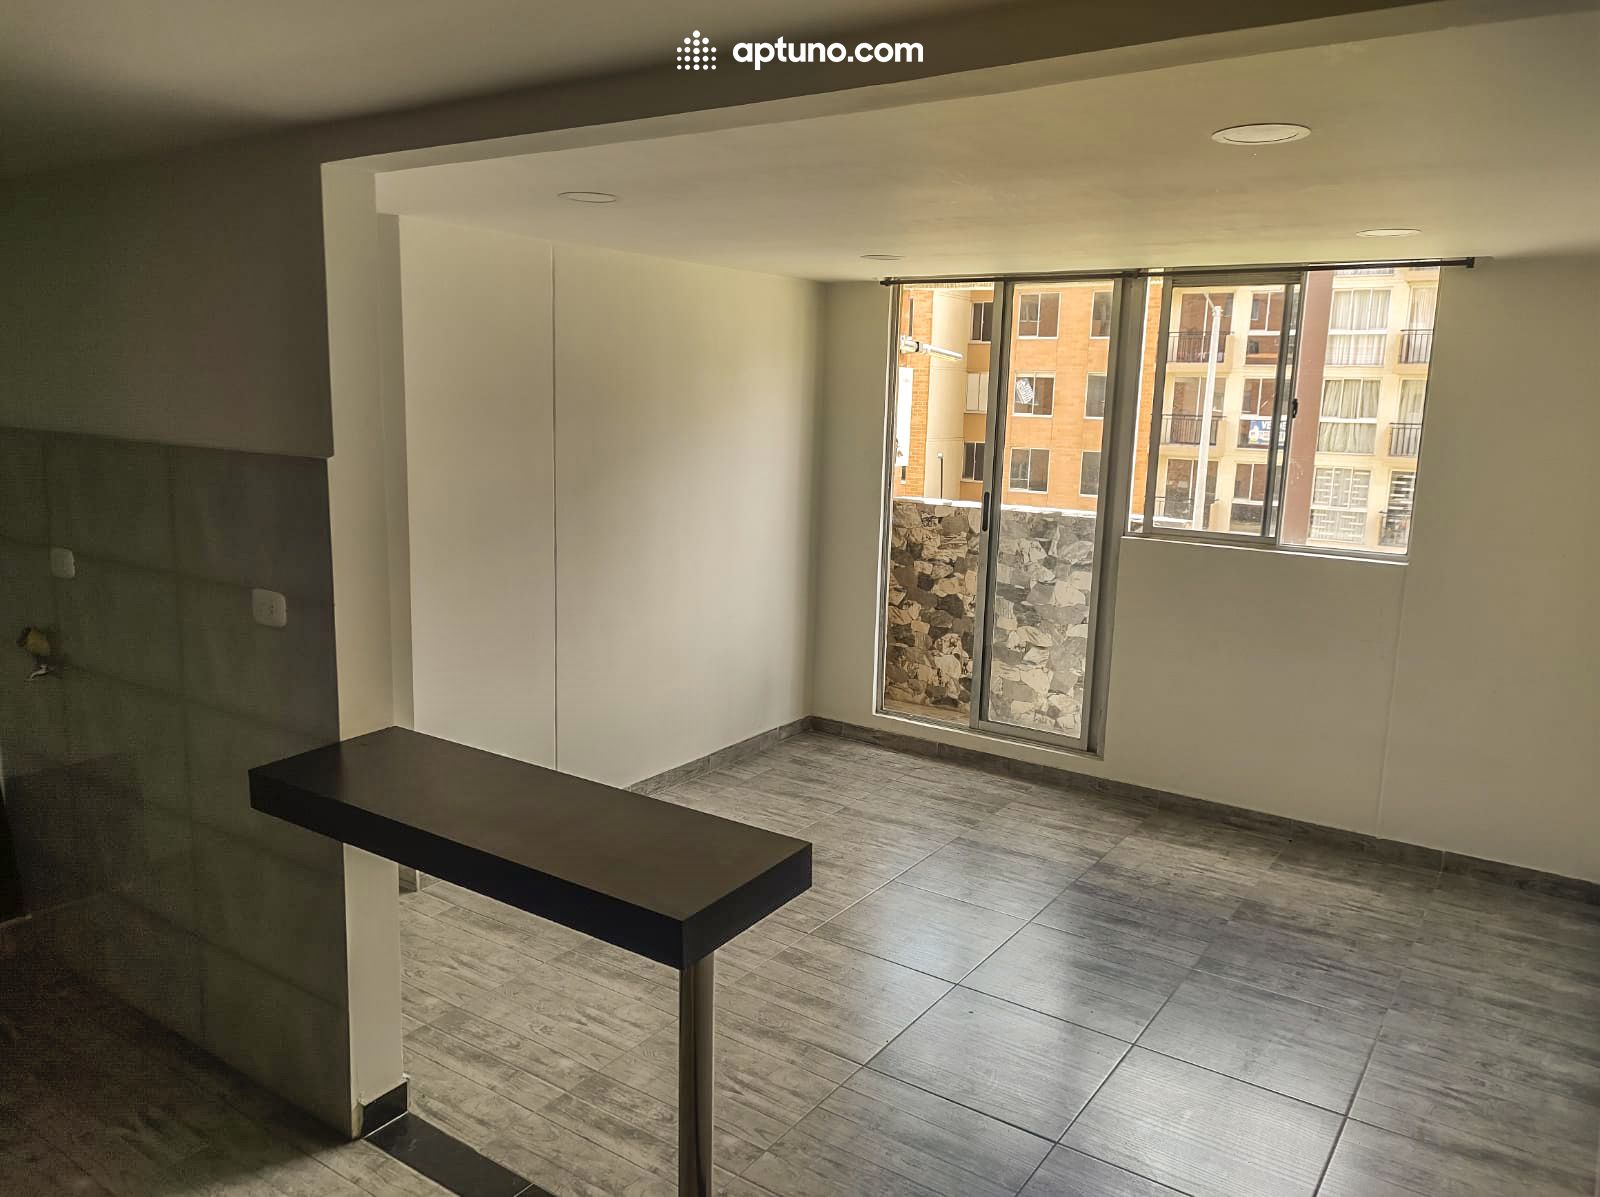 Apartamento en arriendo Madrid 64 m² - $ 800.000,00